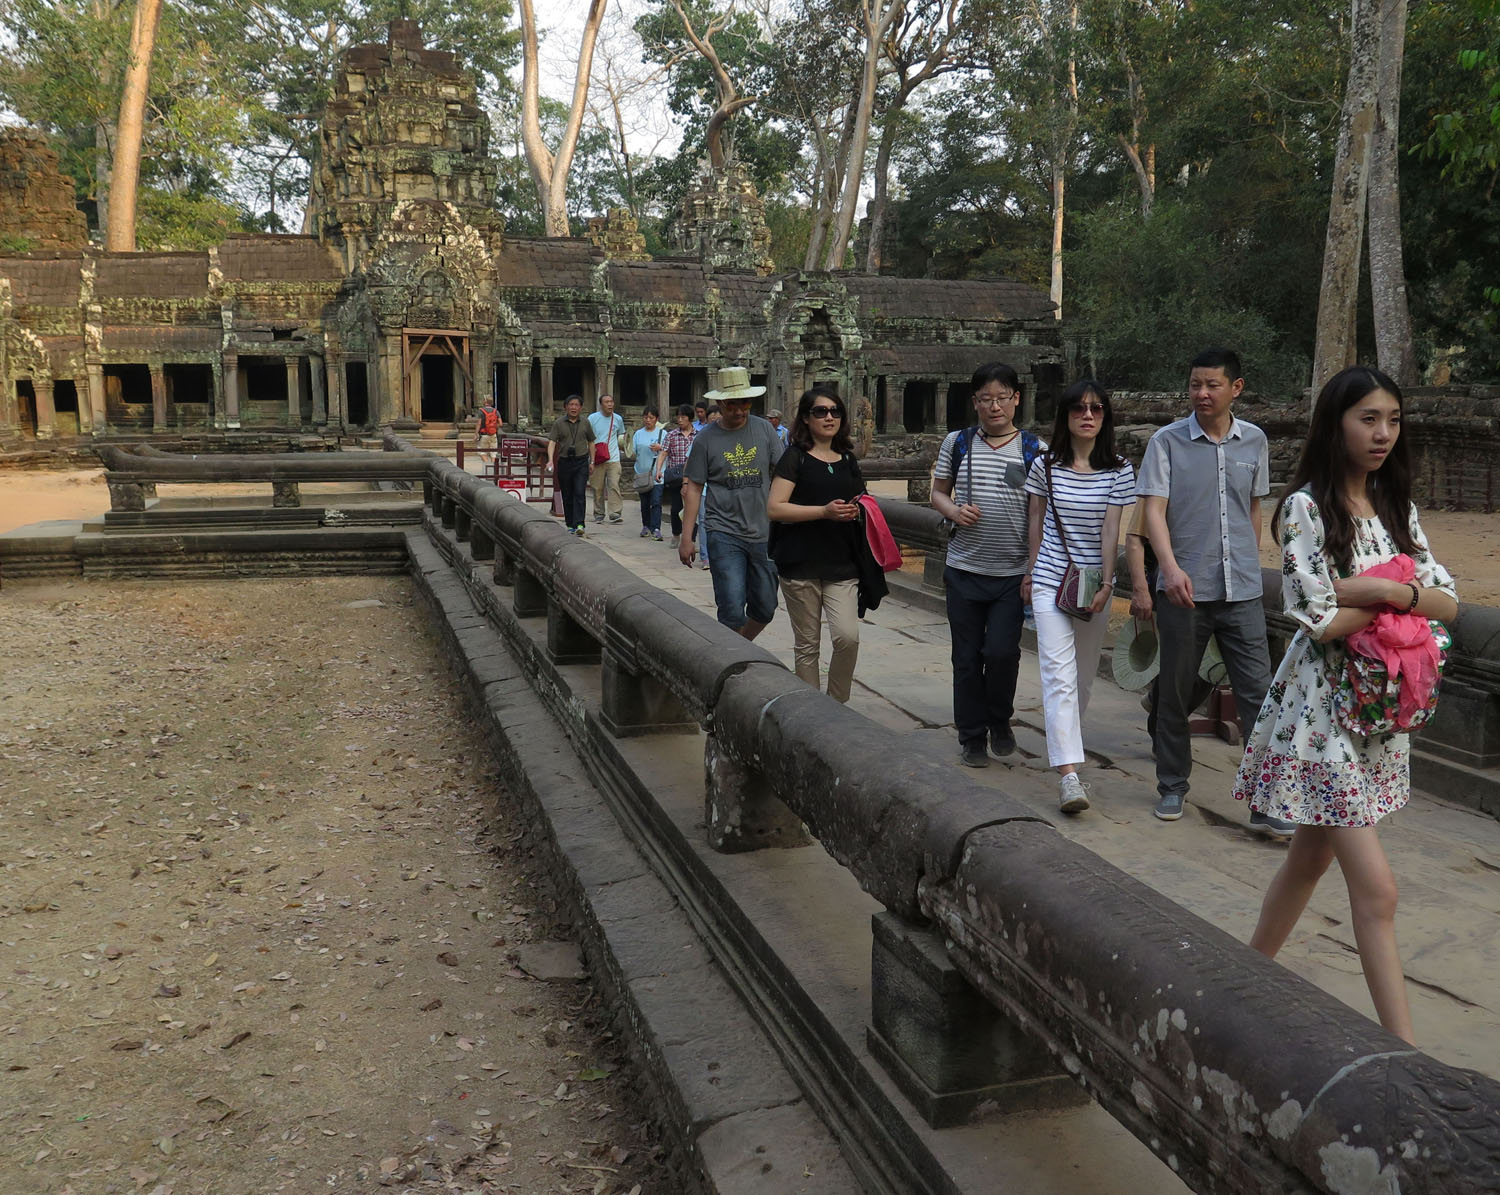 Cambodia-Angkor-Wat